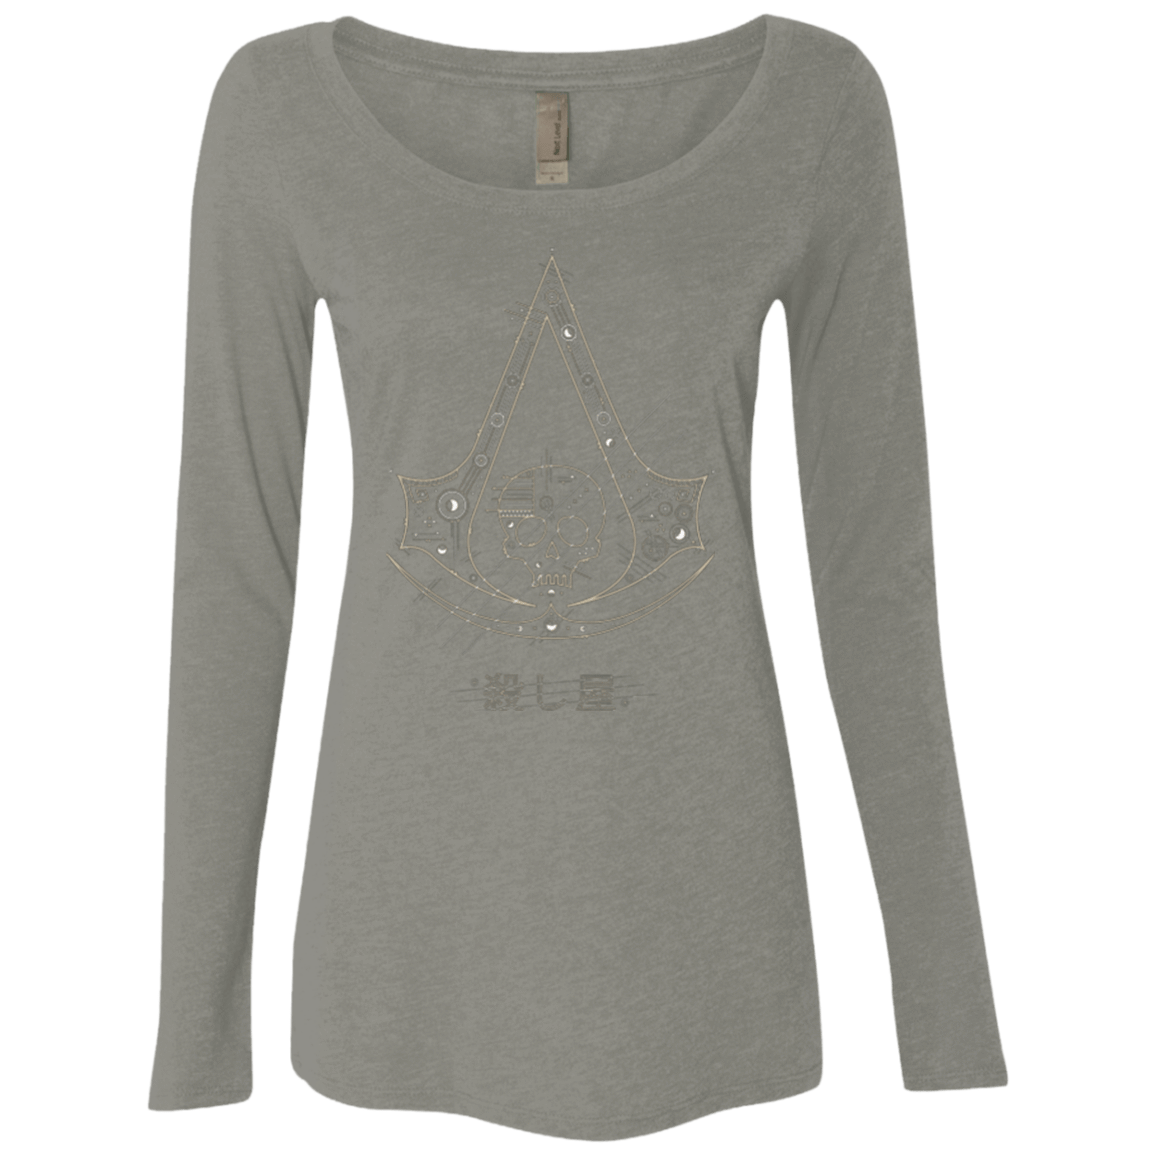 T-Shirts Venetian Grey / Small Tech Creed Women's Triblend Long Sleeve Shirt